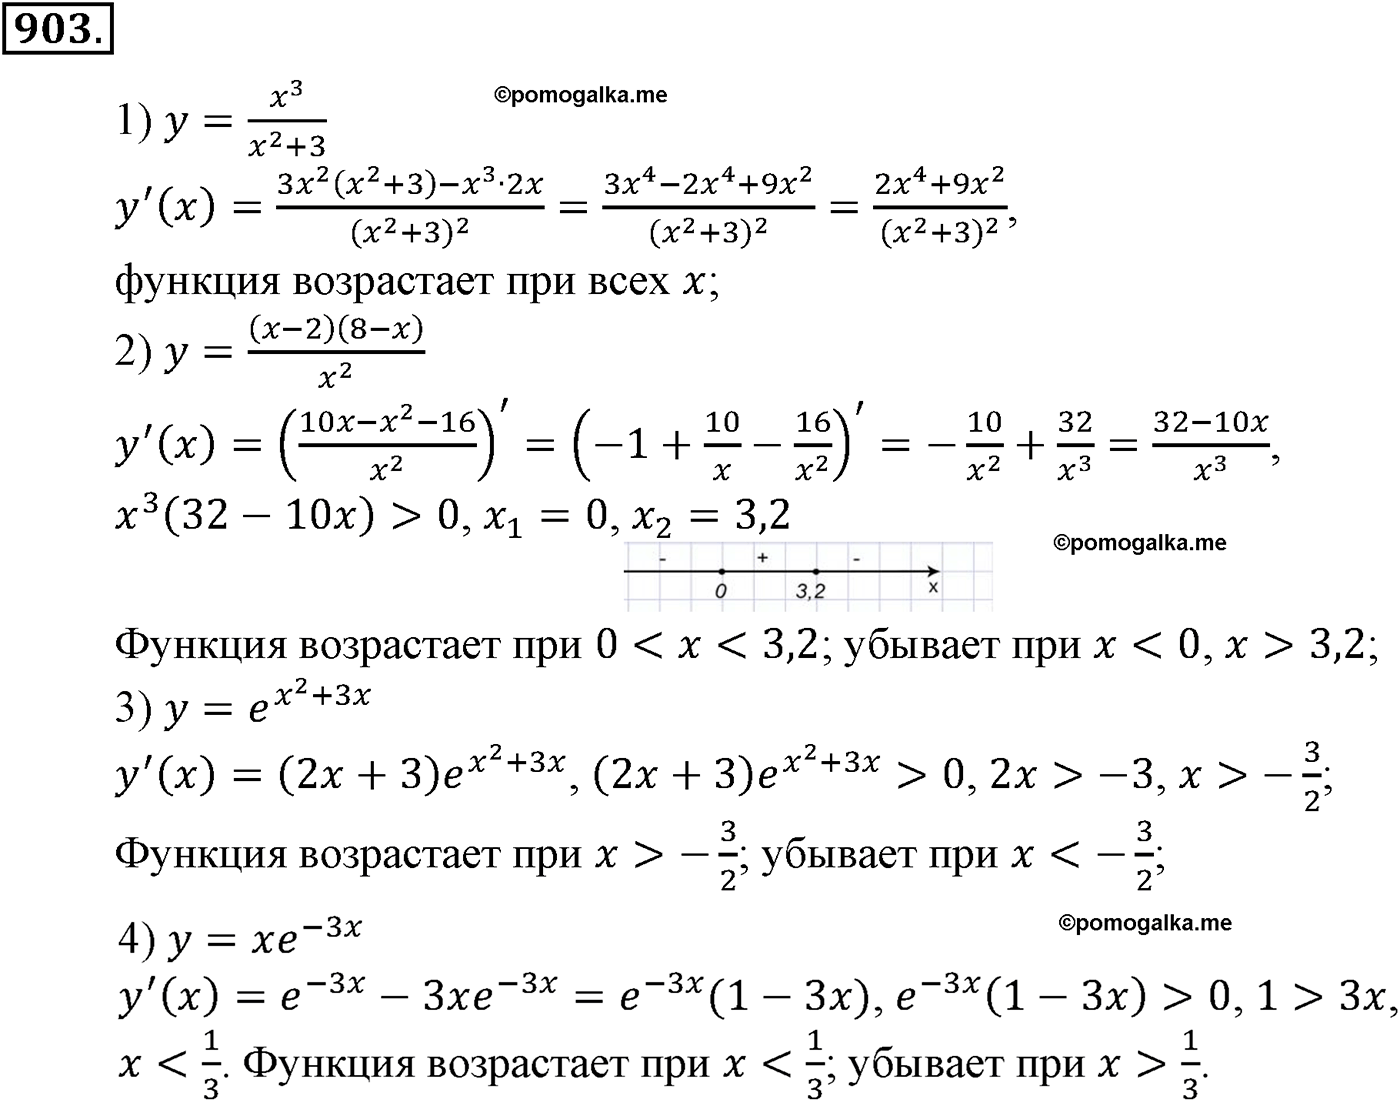 разбор задачи №903 по алгебре за 10-11 класс из учебника Алимова, Колягина